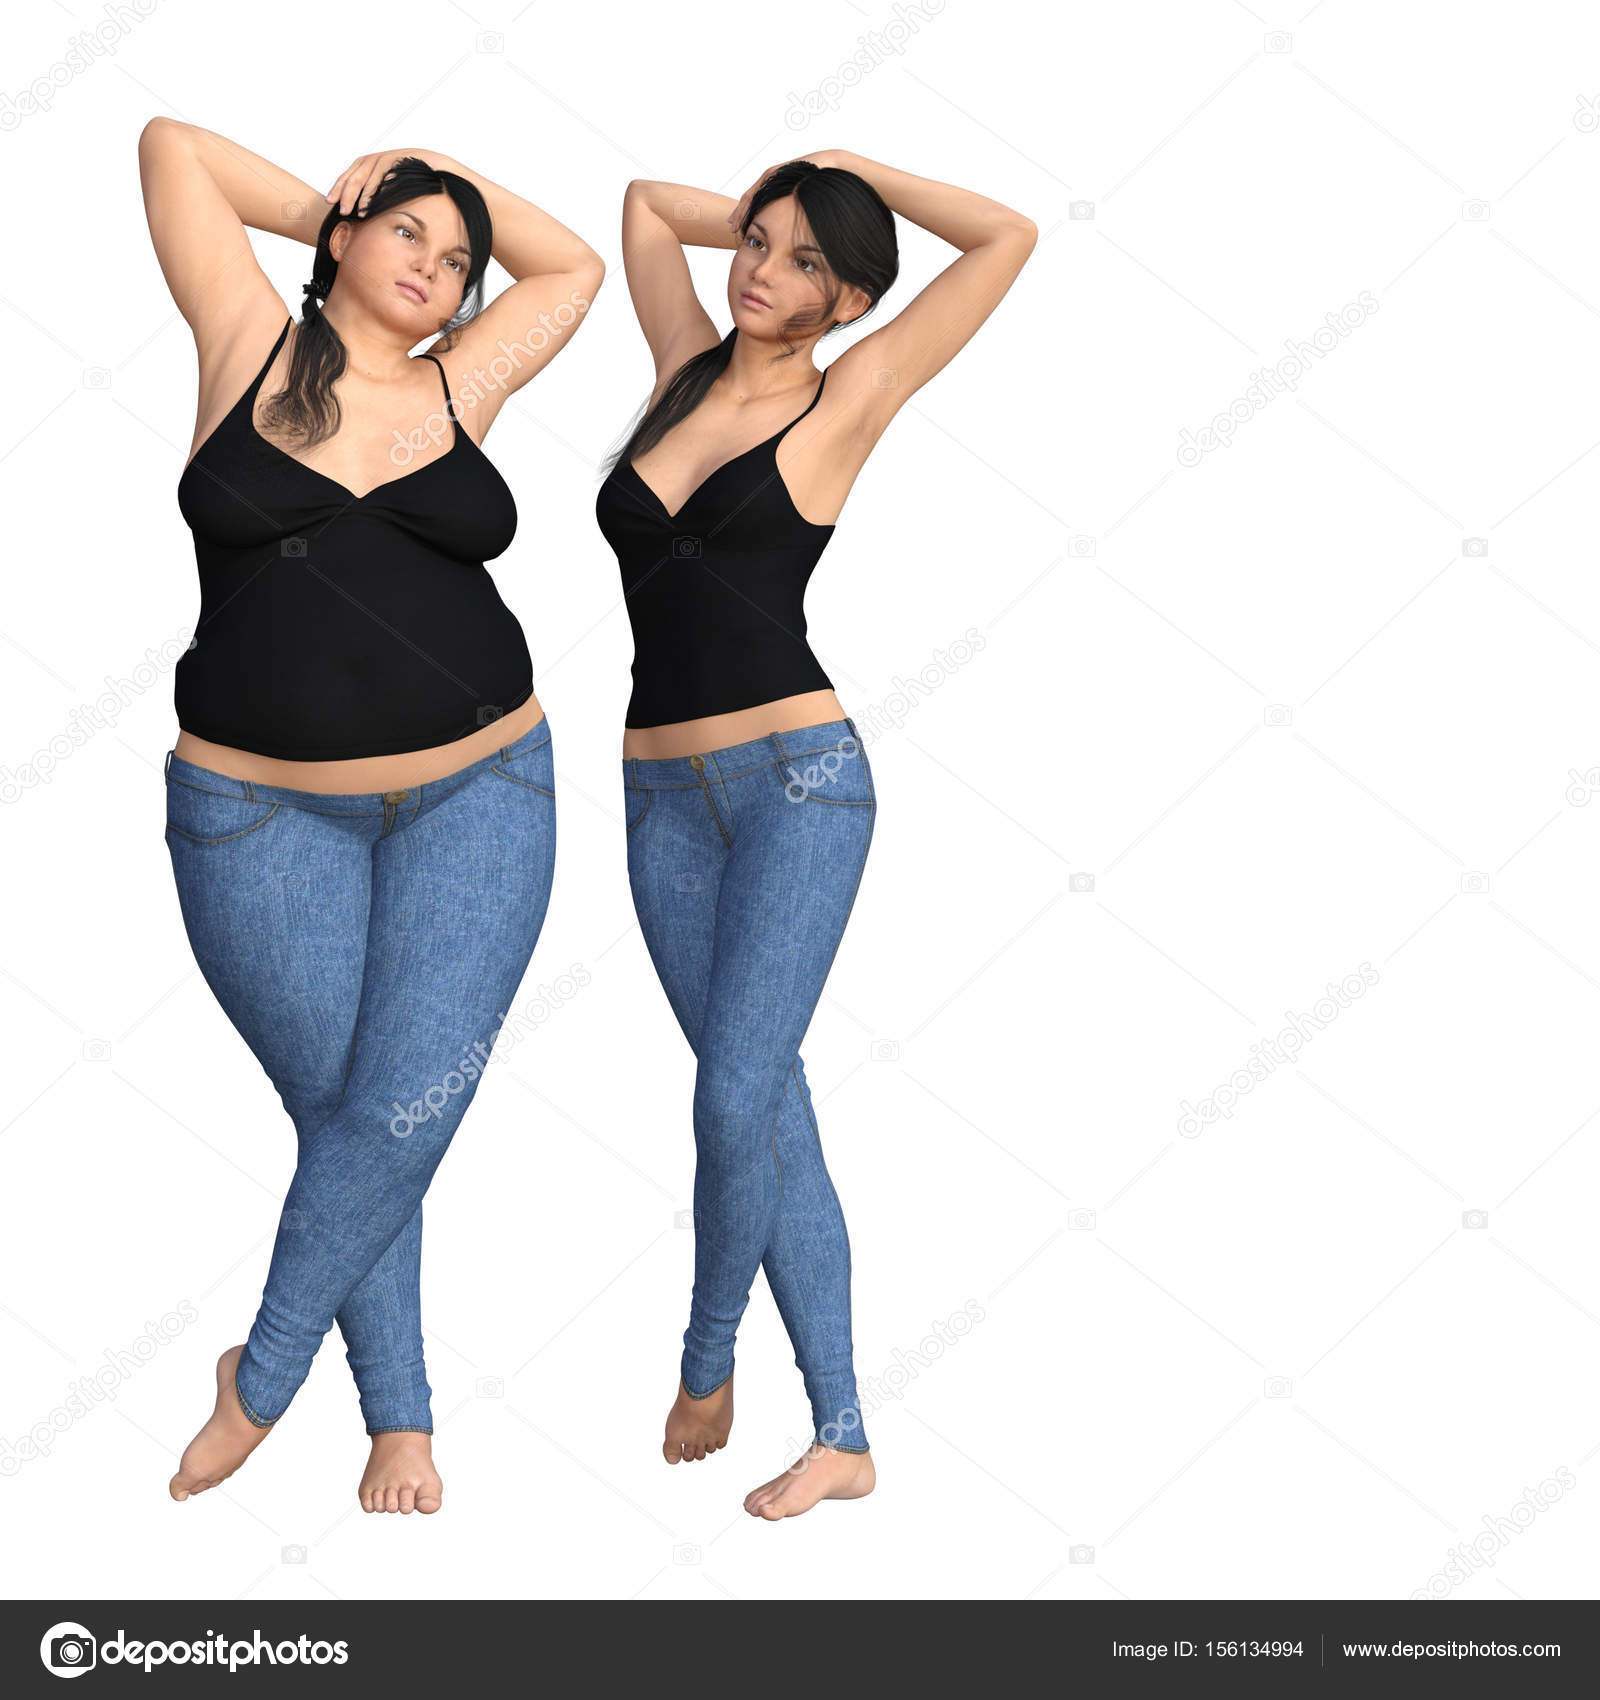 Ilustración 3D de la mujer gorda con sobrepeso vs mujer muscular en forma d...